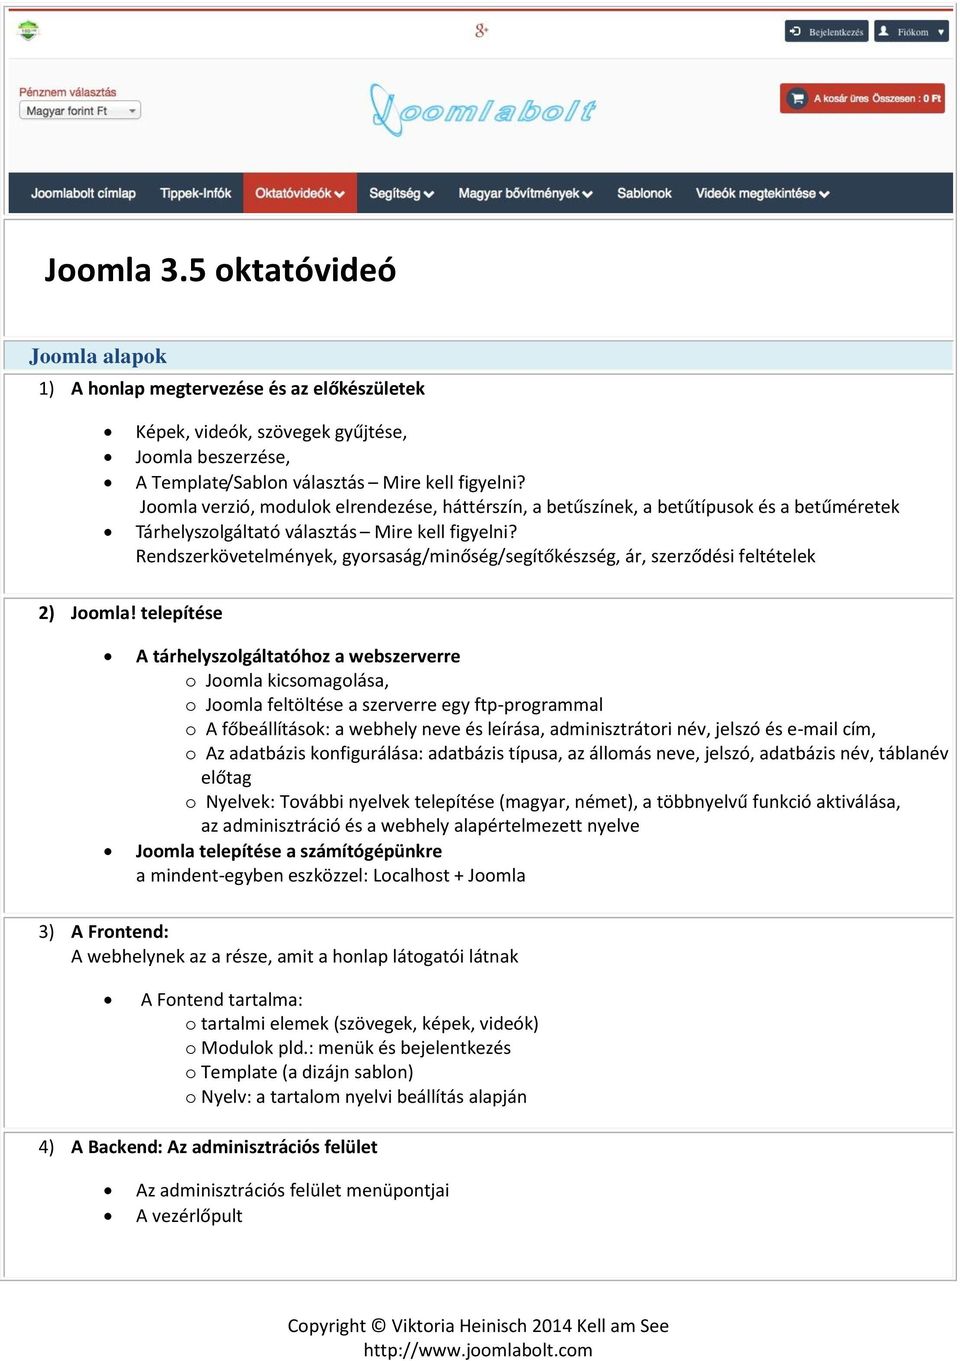 Joomla 3.5 oktatóvideó - PDF Ingyenes letöltés